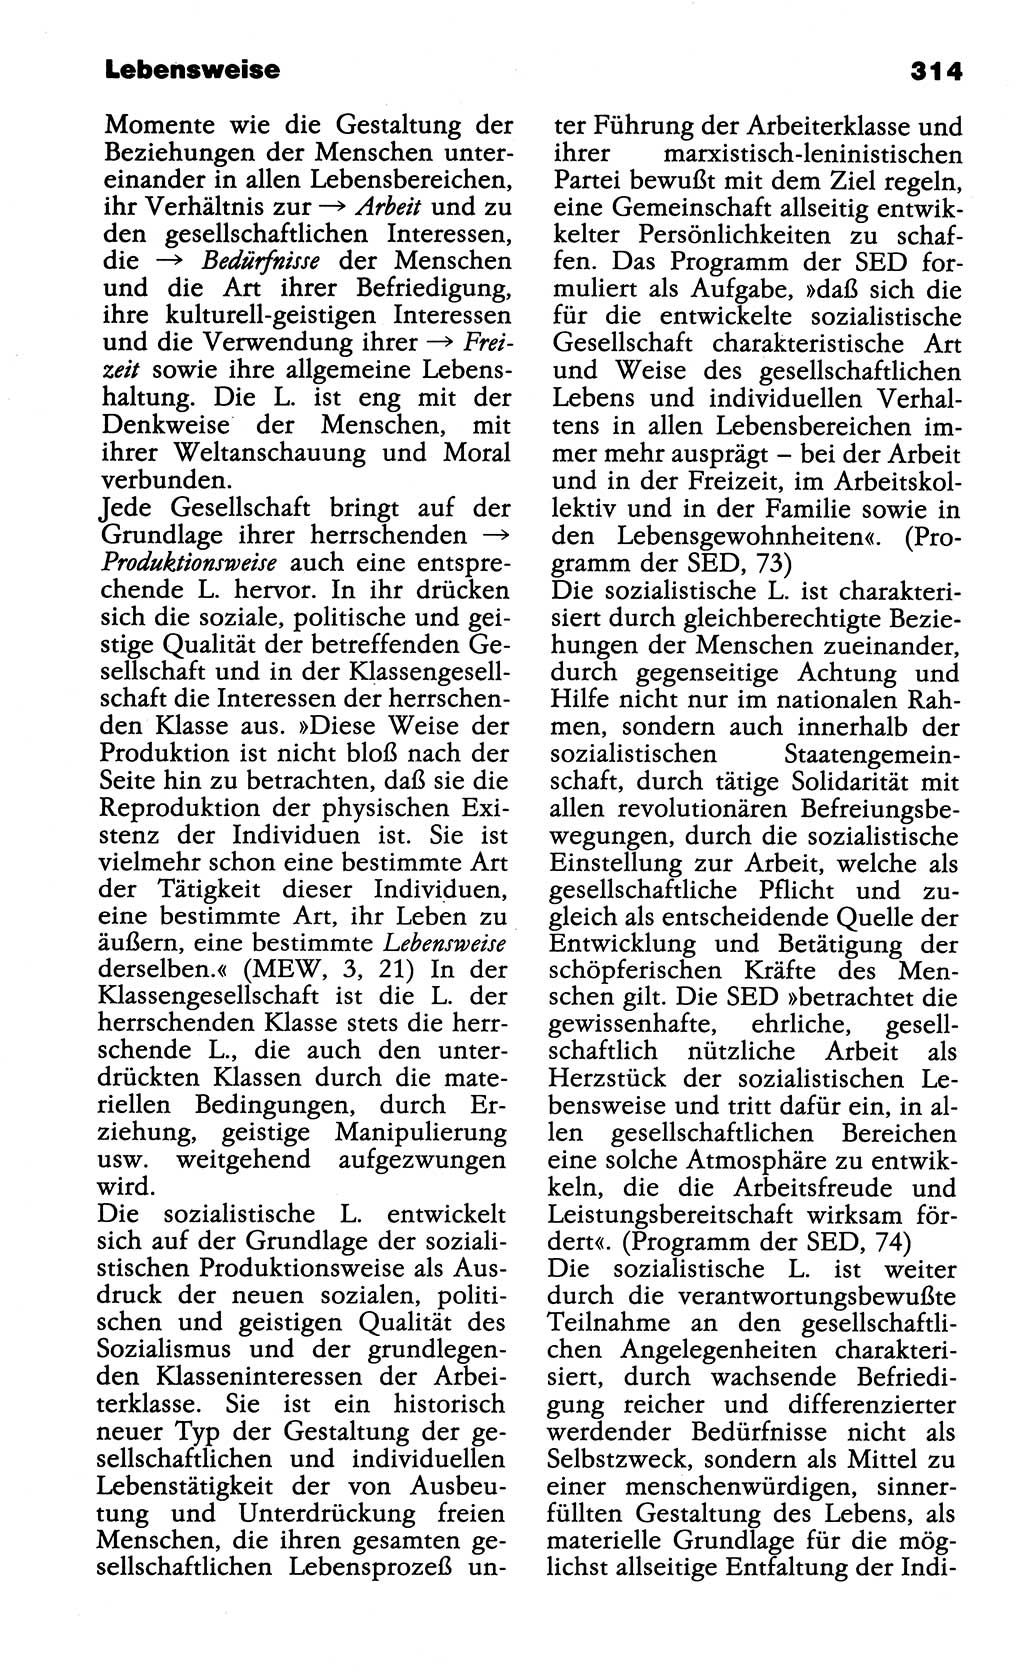 Wörterbuch der marxistisch-leninistischen Philosophie [Deutsche Demokratische Republik (DDR)] 1985, Seite 314 (Wb. ML Phil. DDR 1985, S. 314)